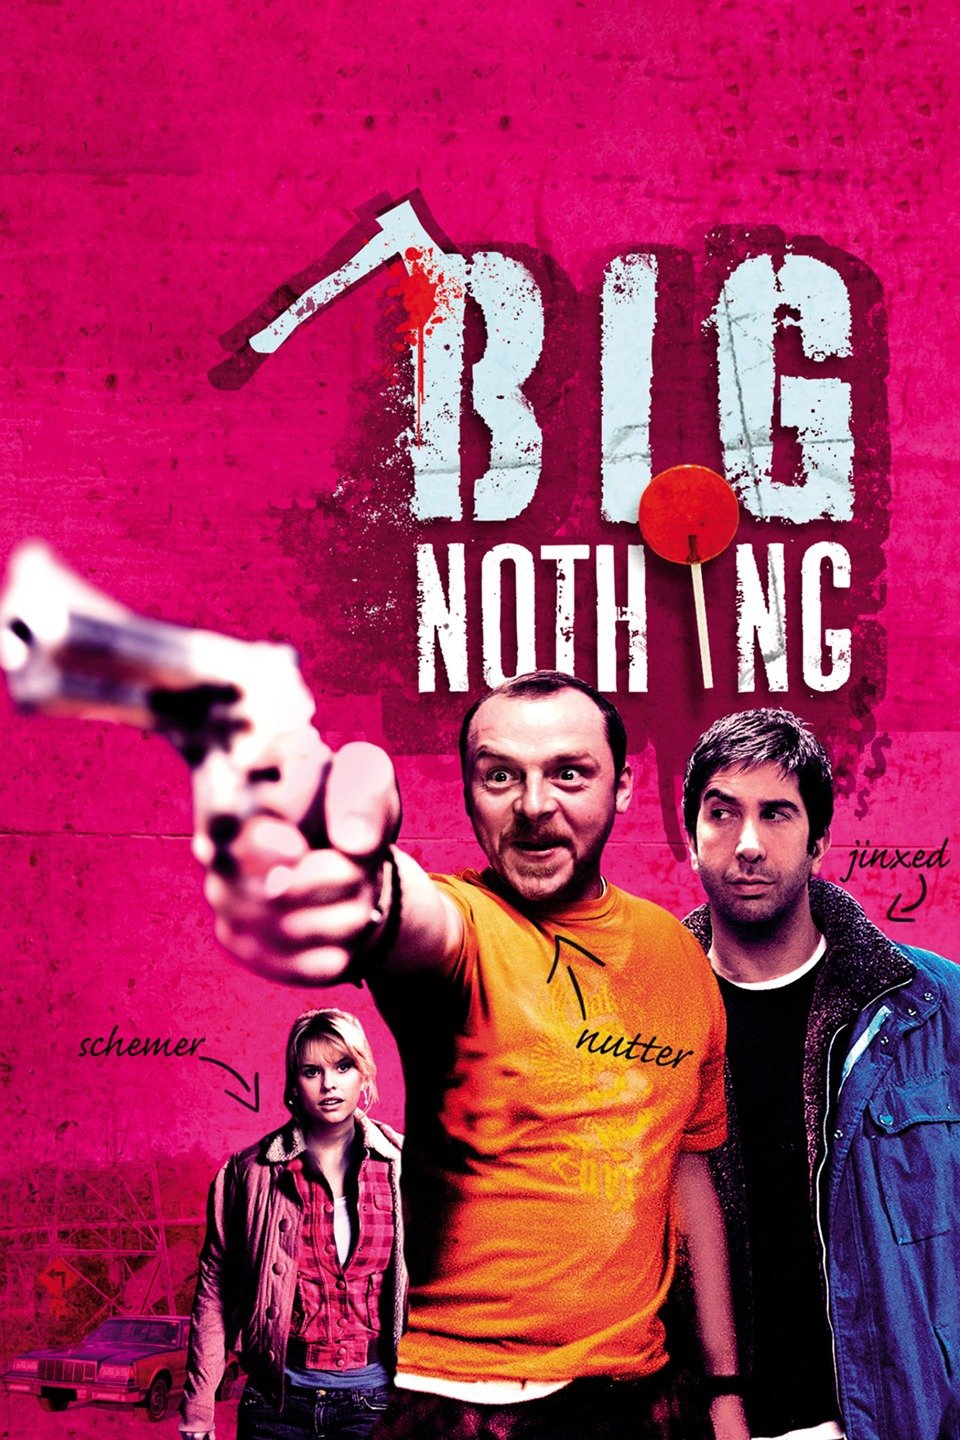 2006 Big Nothing